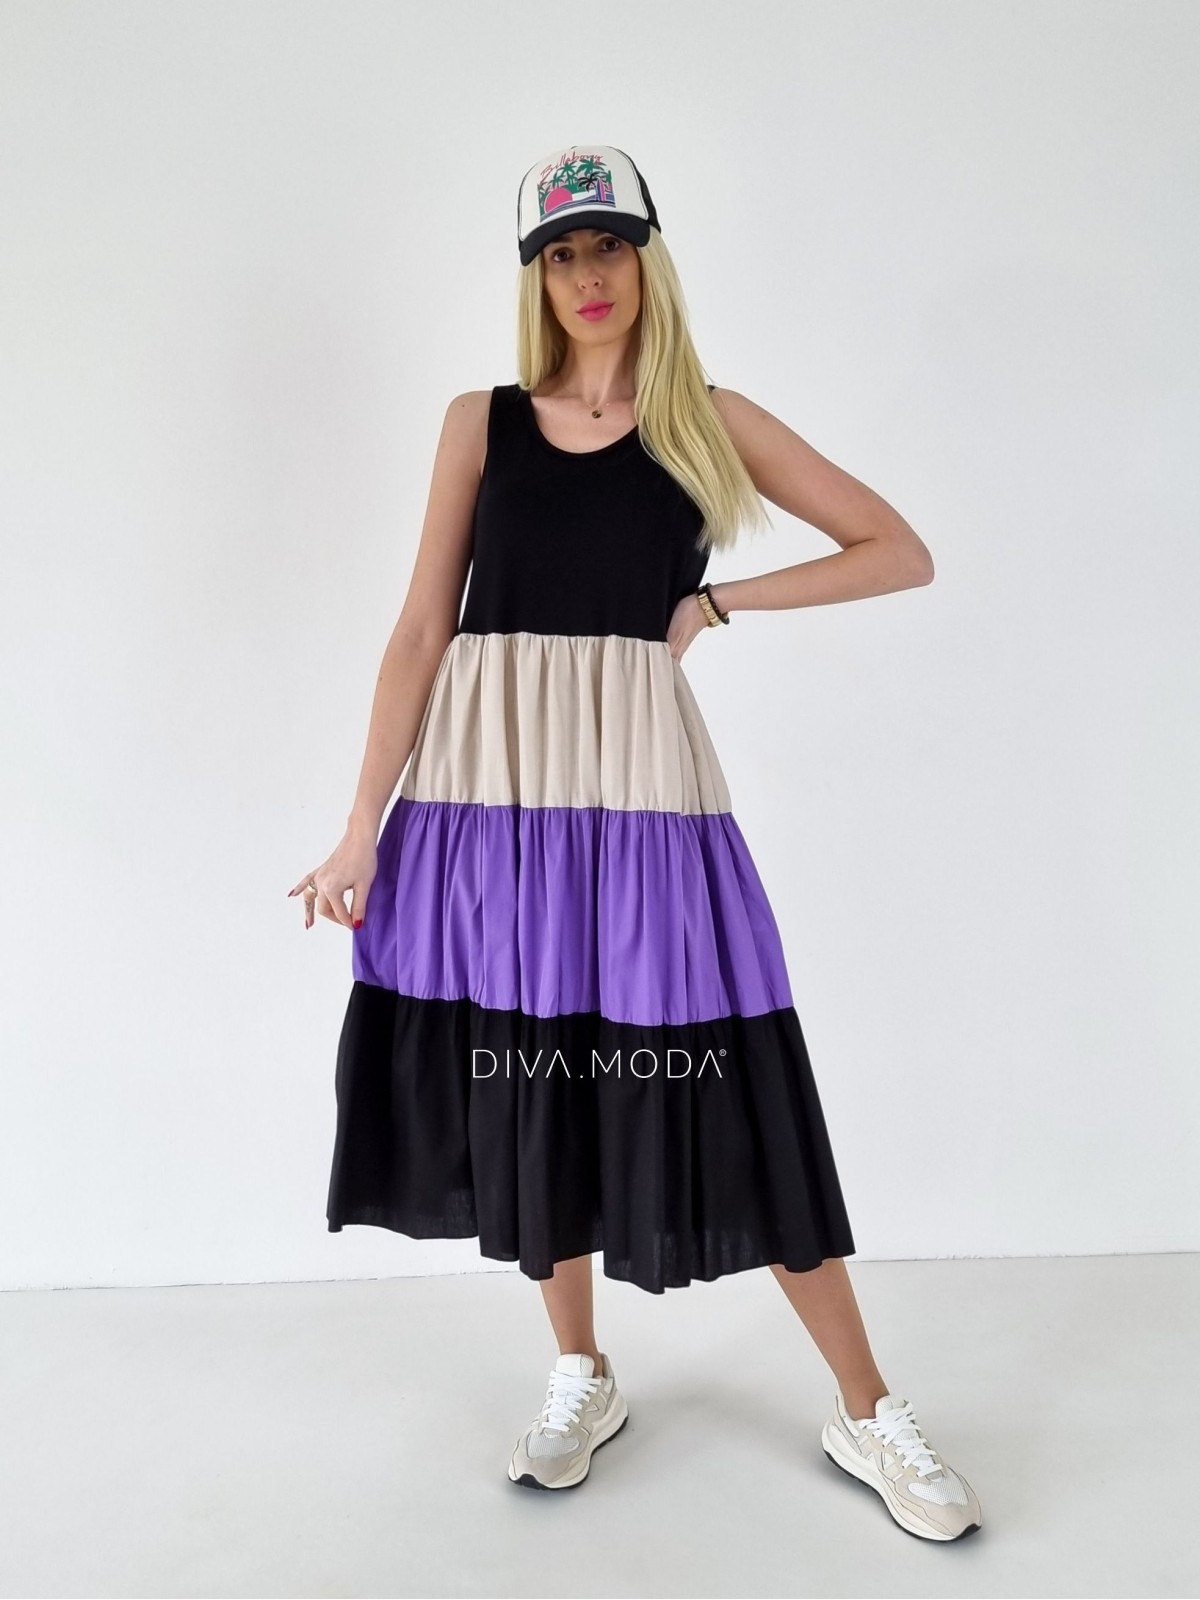 Maxi šaty Leana černo-fialové A 200